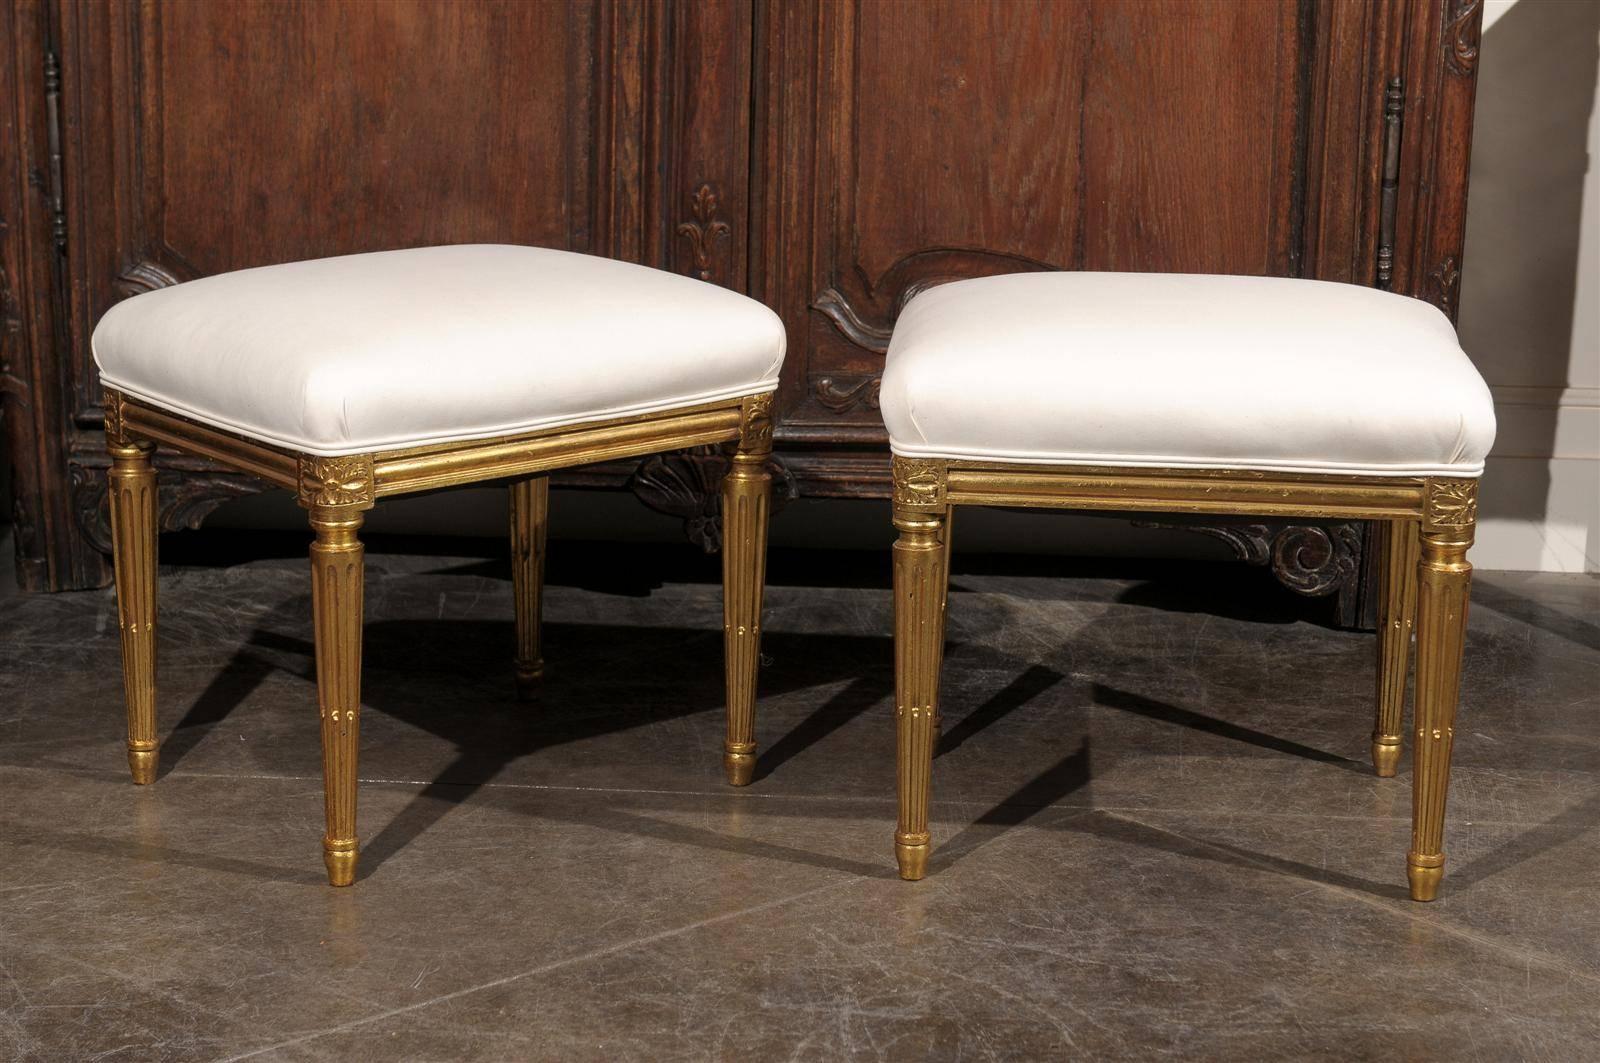 Une paire de tabourets français rembourrés et dorés du début du 20e siècle. Cette élégante paire de tabourets français de style Louis XVI datant d'environ 1920 présente une nouvelle tapisserie en mousseline appliquée sur le siège rectangulaire. Le